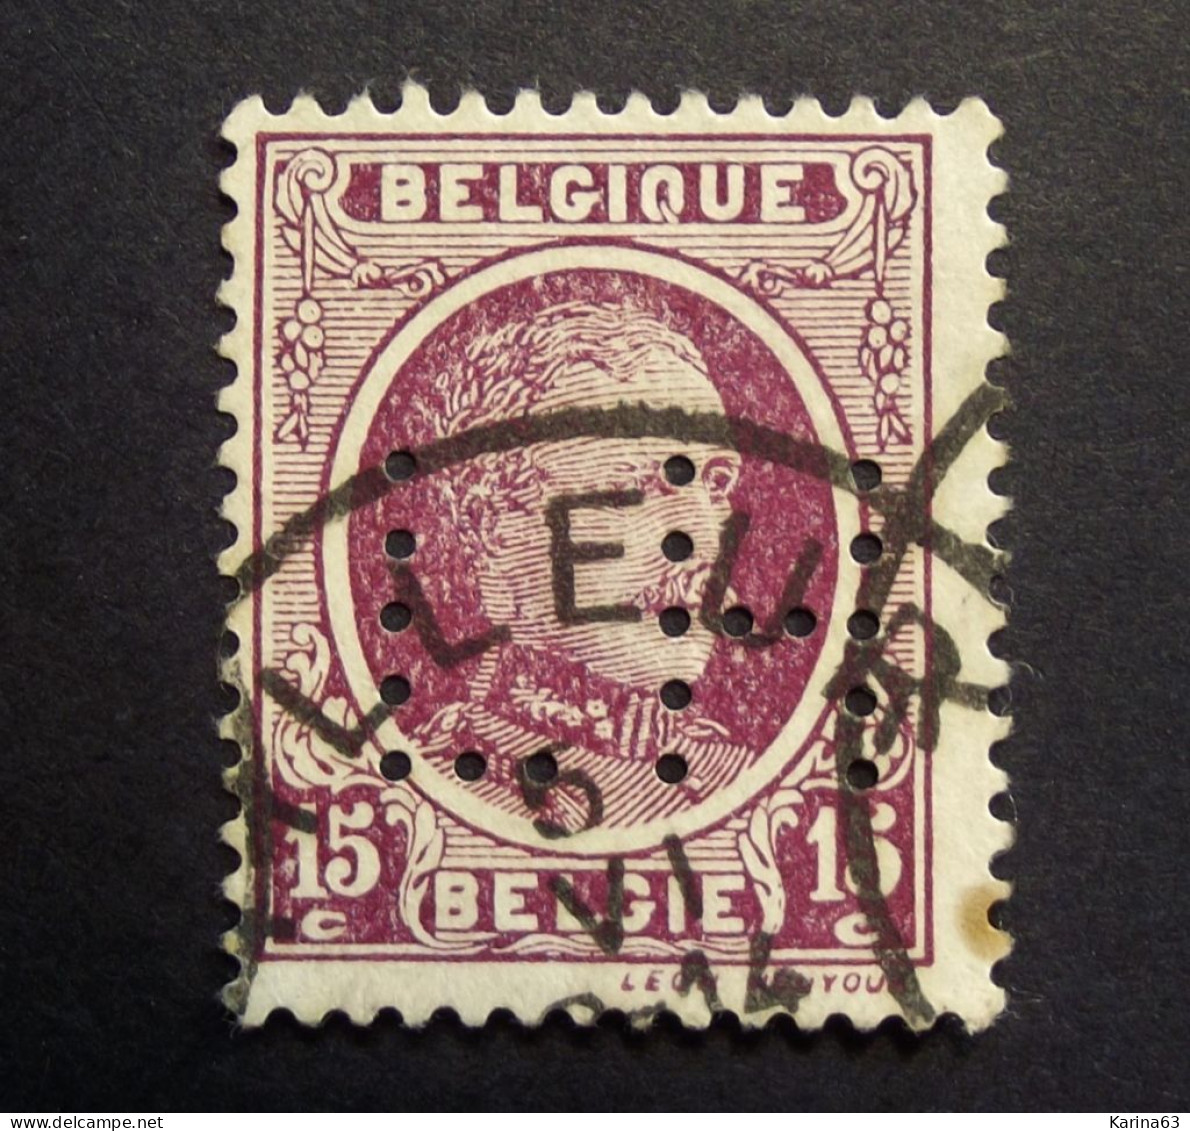 België - Belgique - Perfin Perforé - L H  - S.A. Charbonnages De La Hay - 1916 -  Cancelled - 1909-34